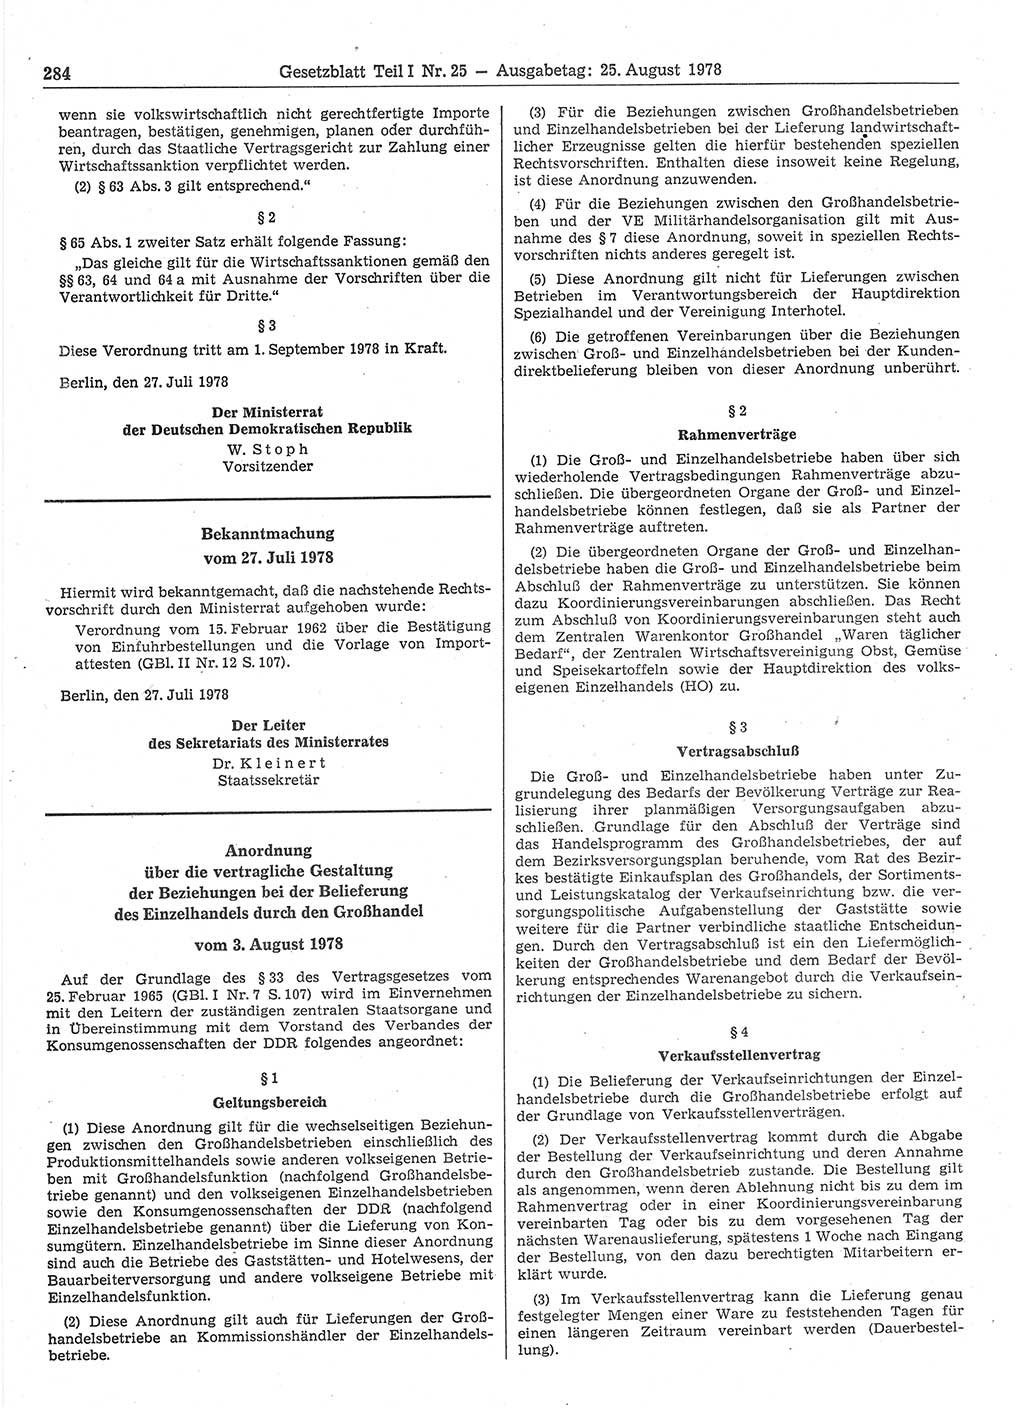 Gesetzblatt (GBl.) der Deutschen Demokratischen Republik (DDR) Teil Ⅰ 1978, Seite 284 (GBl. DDR Ⅰ 1978, S. 284)